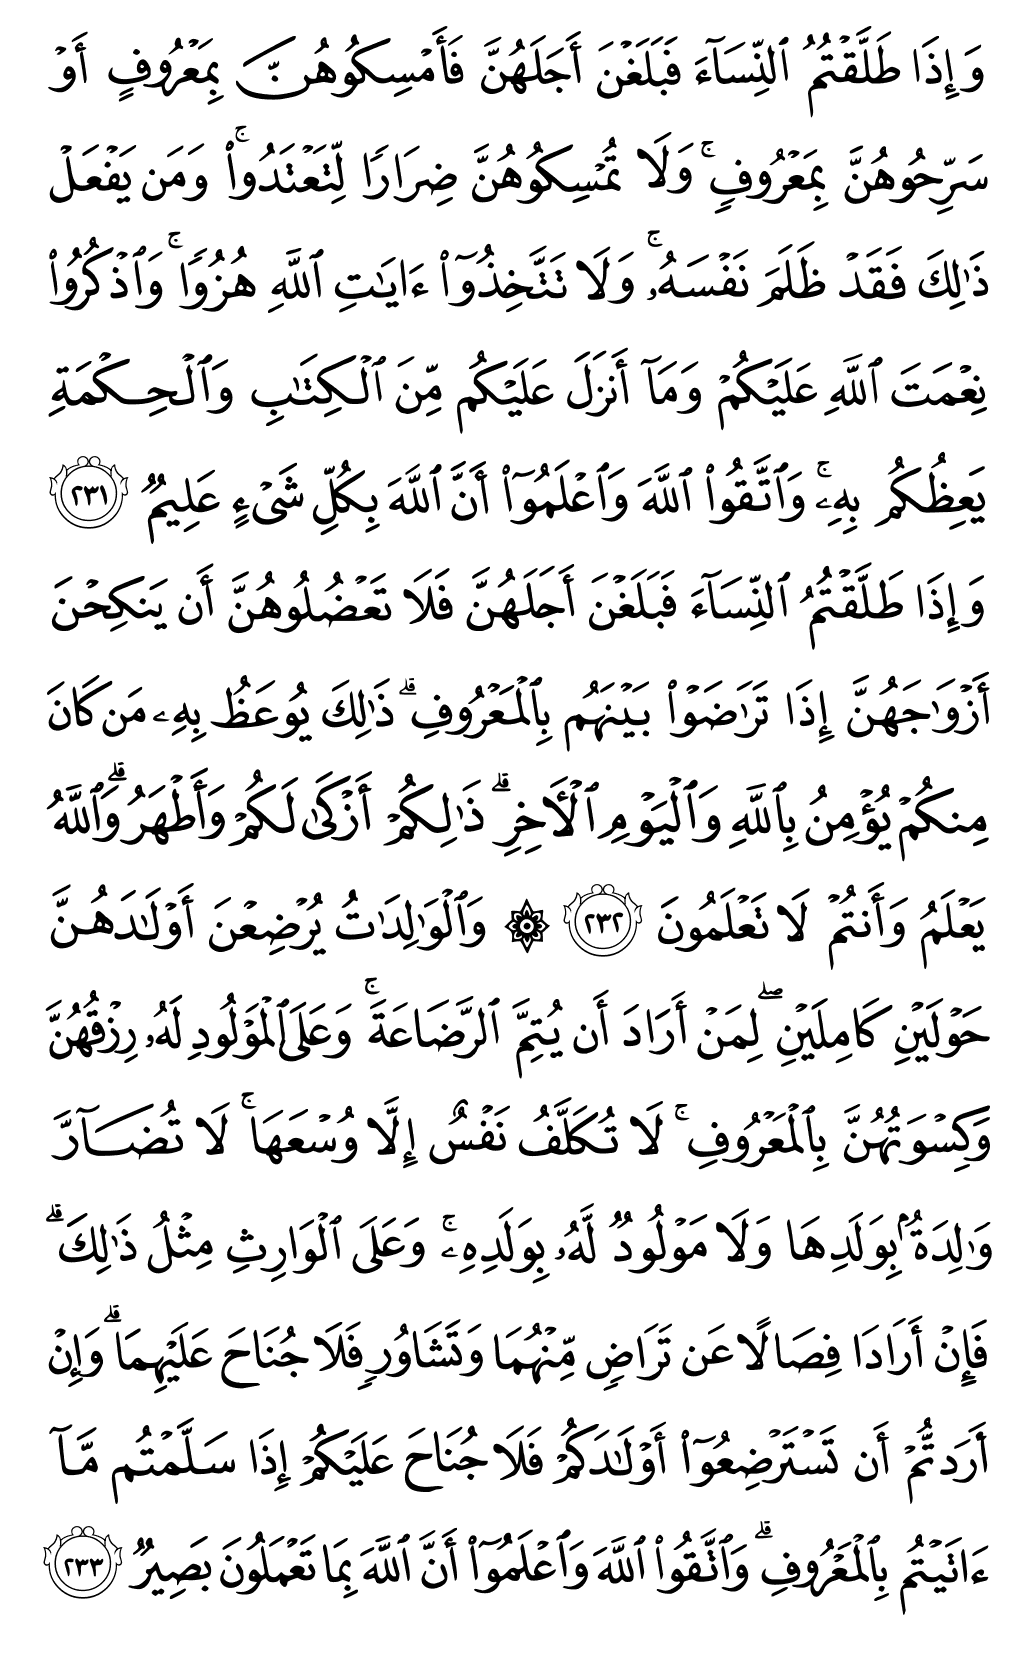 الصفحة رقم 37 من القرآن الكريم